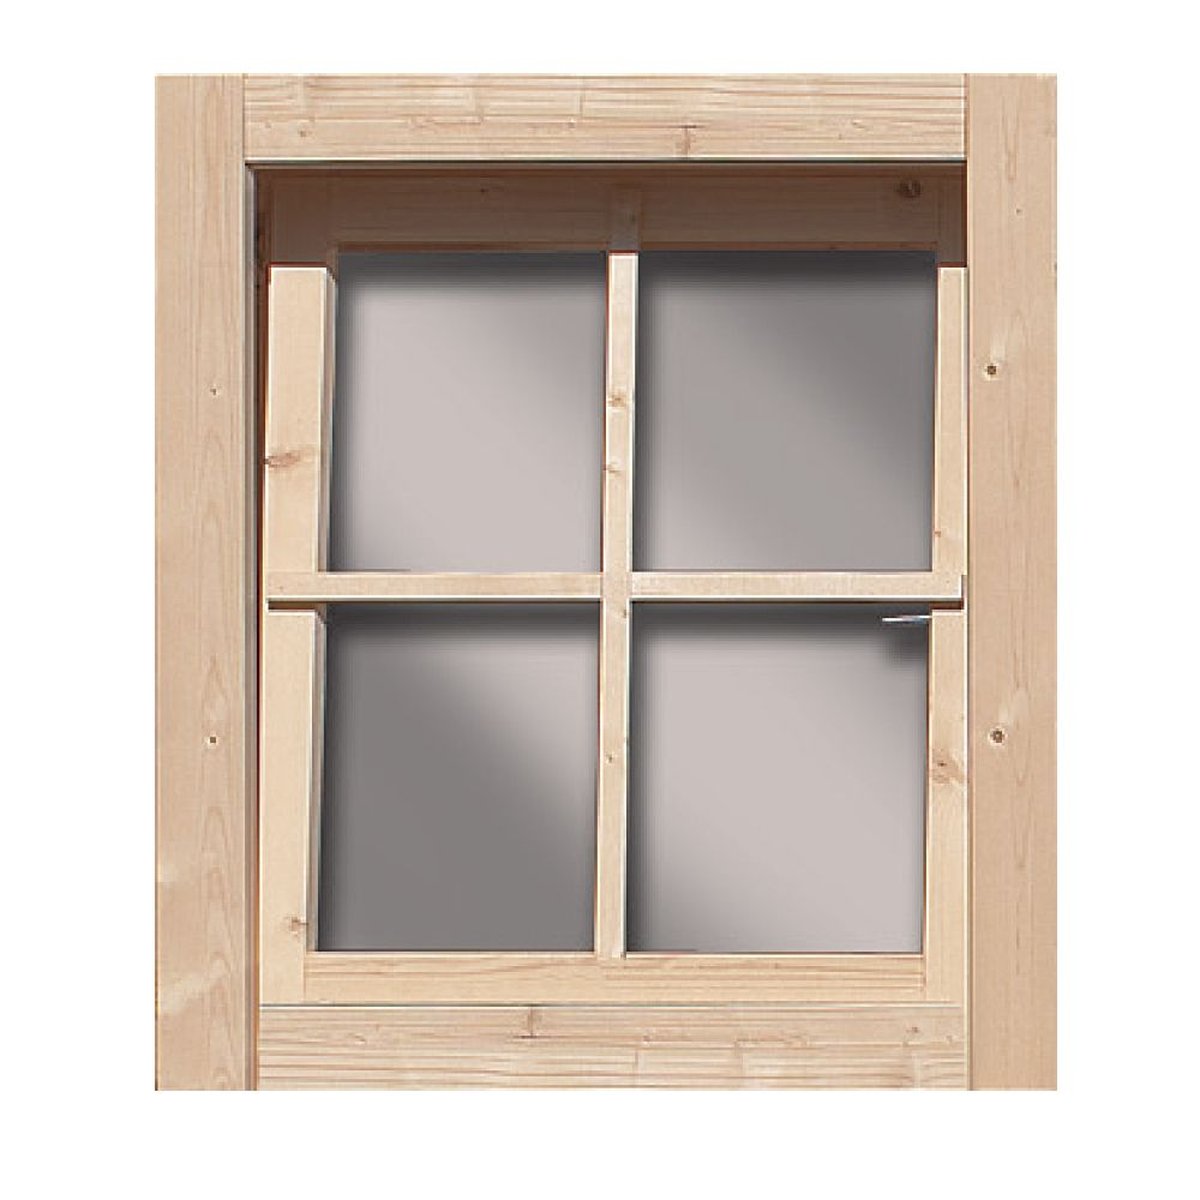 Dreh-/Kippfenster mit Echtglas, zum Selbsteinbau in Holzwand